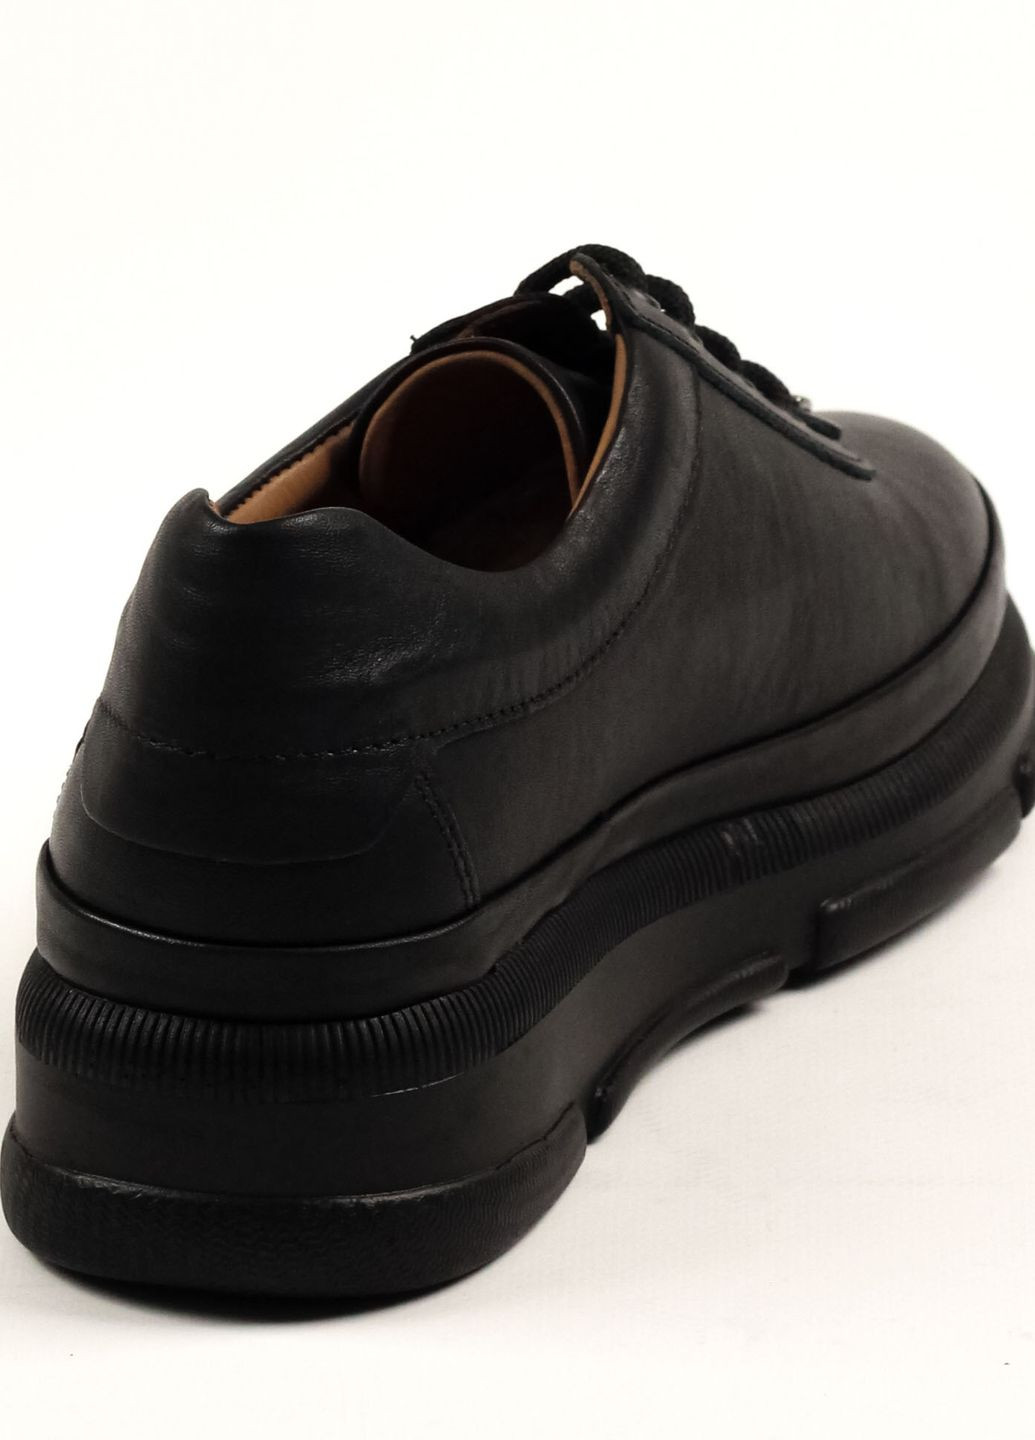 Туфли женские черные кожа Evromoda